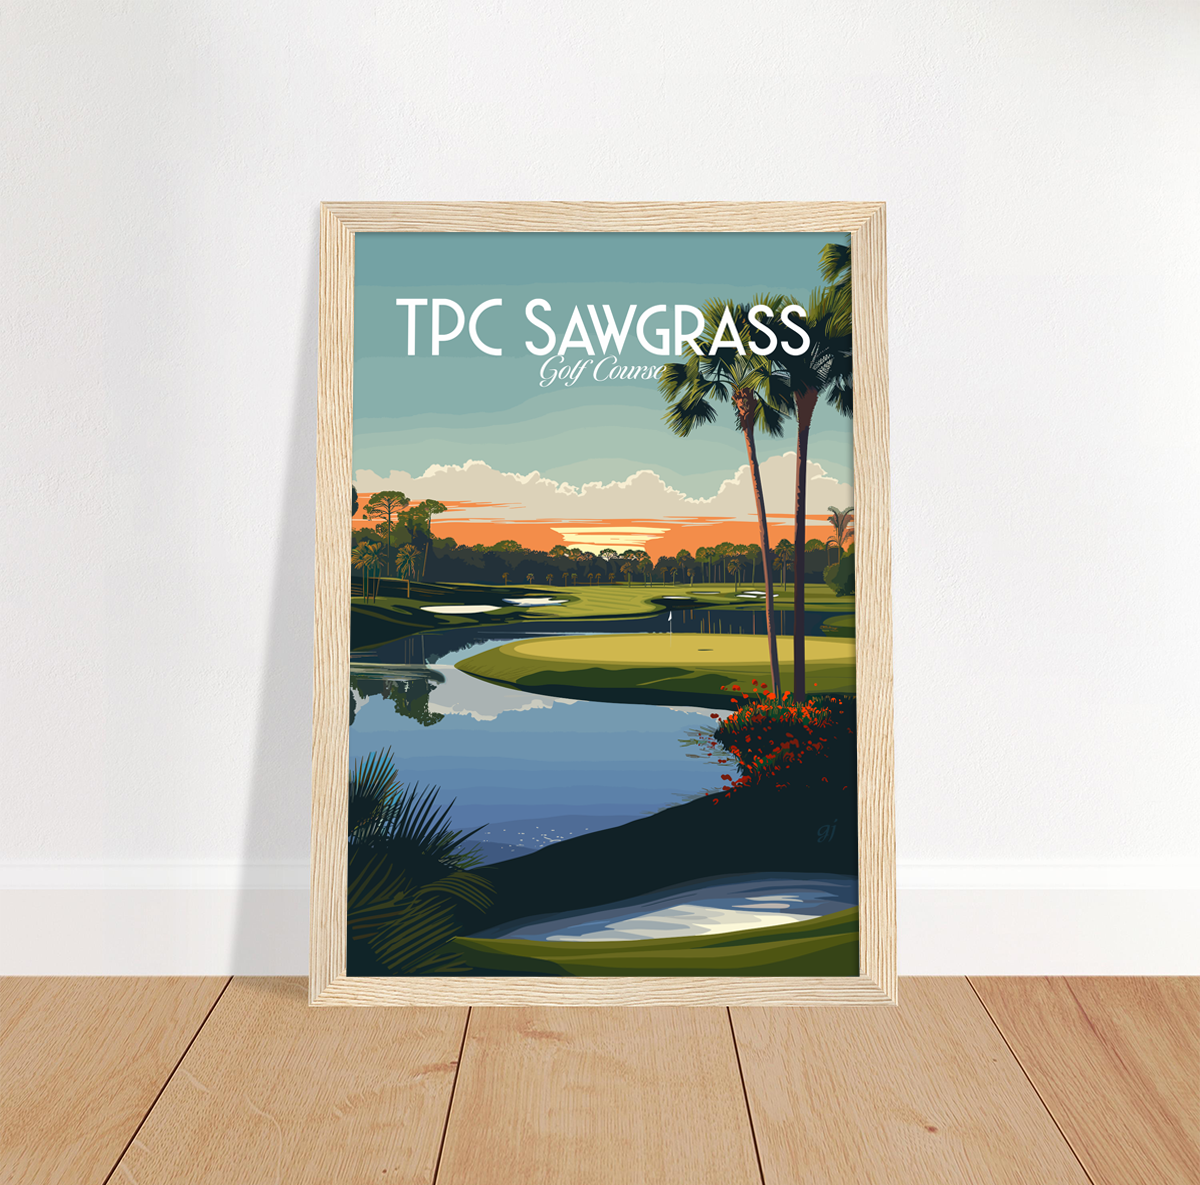 TPC Sawgrass poster by bon voyage design